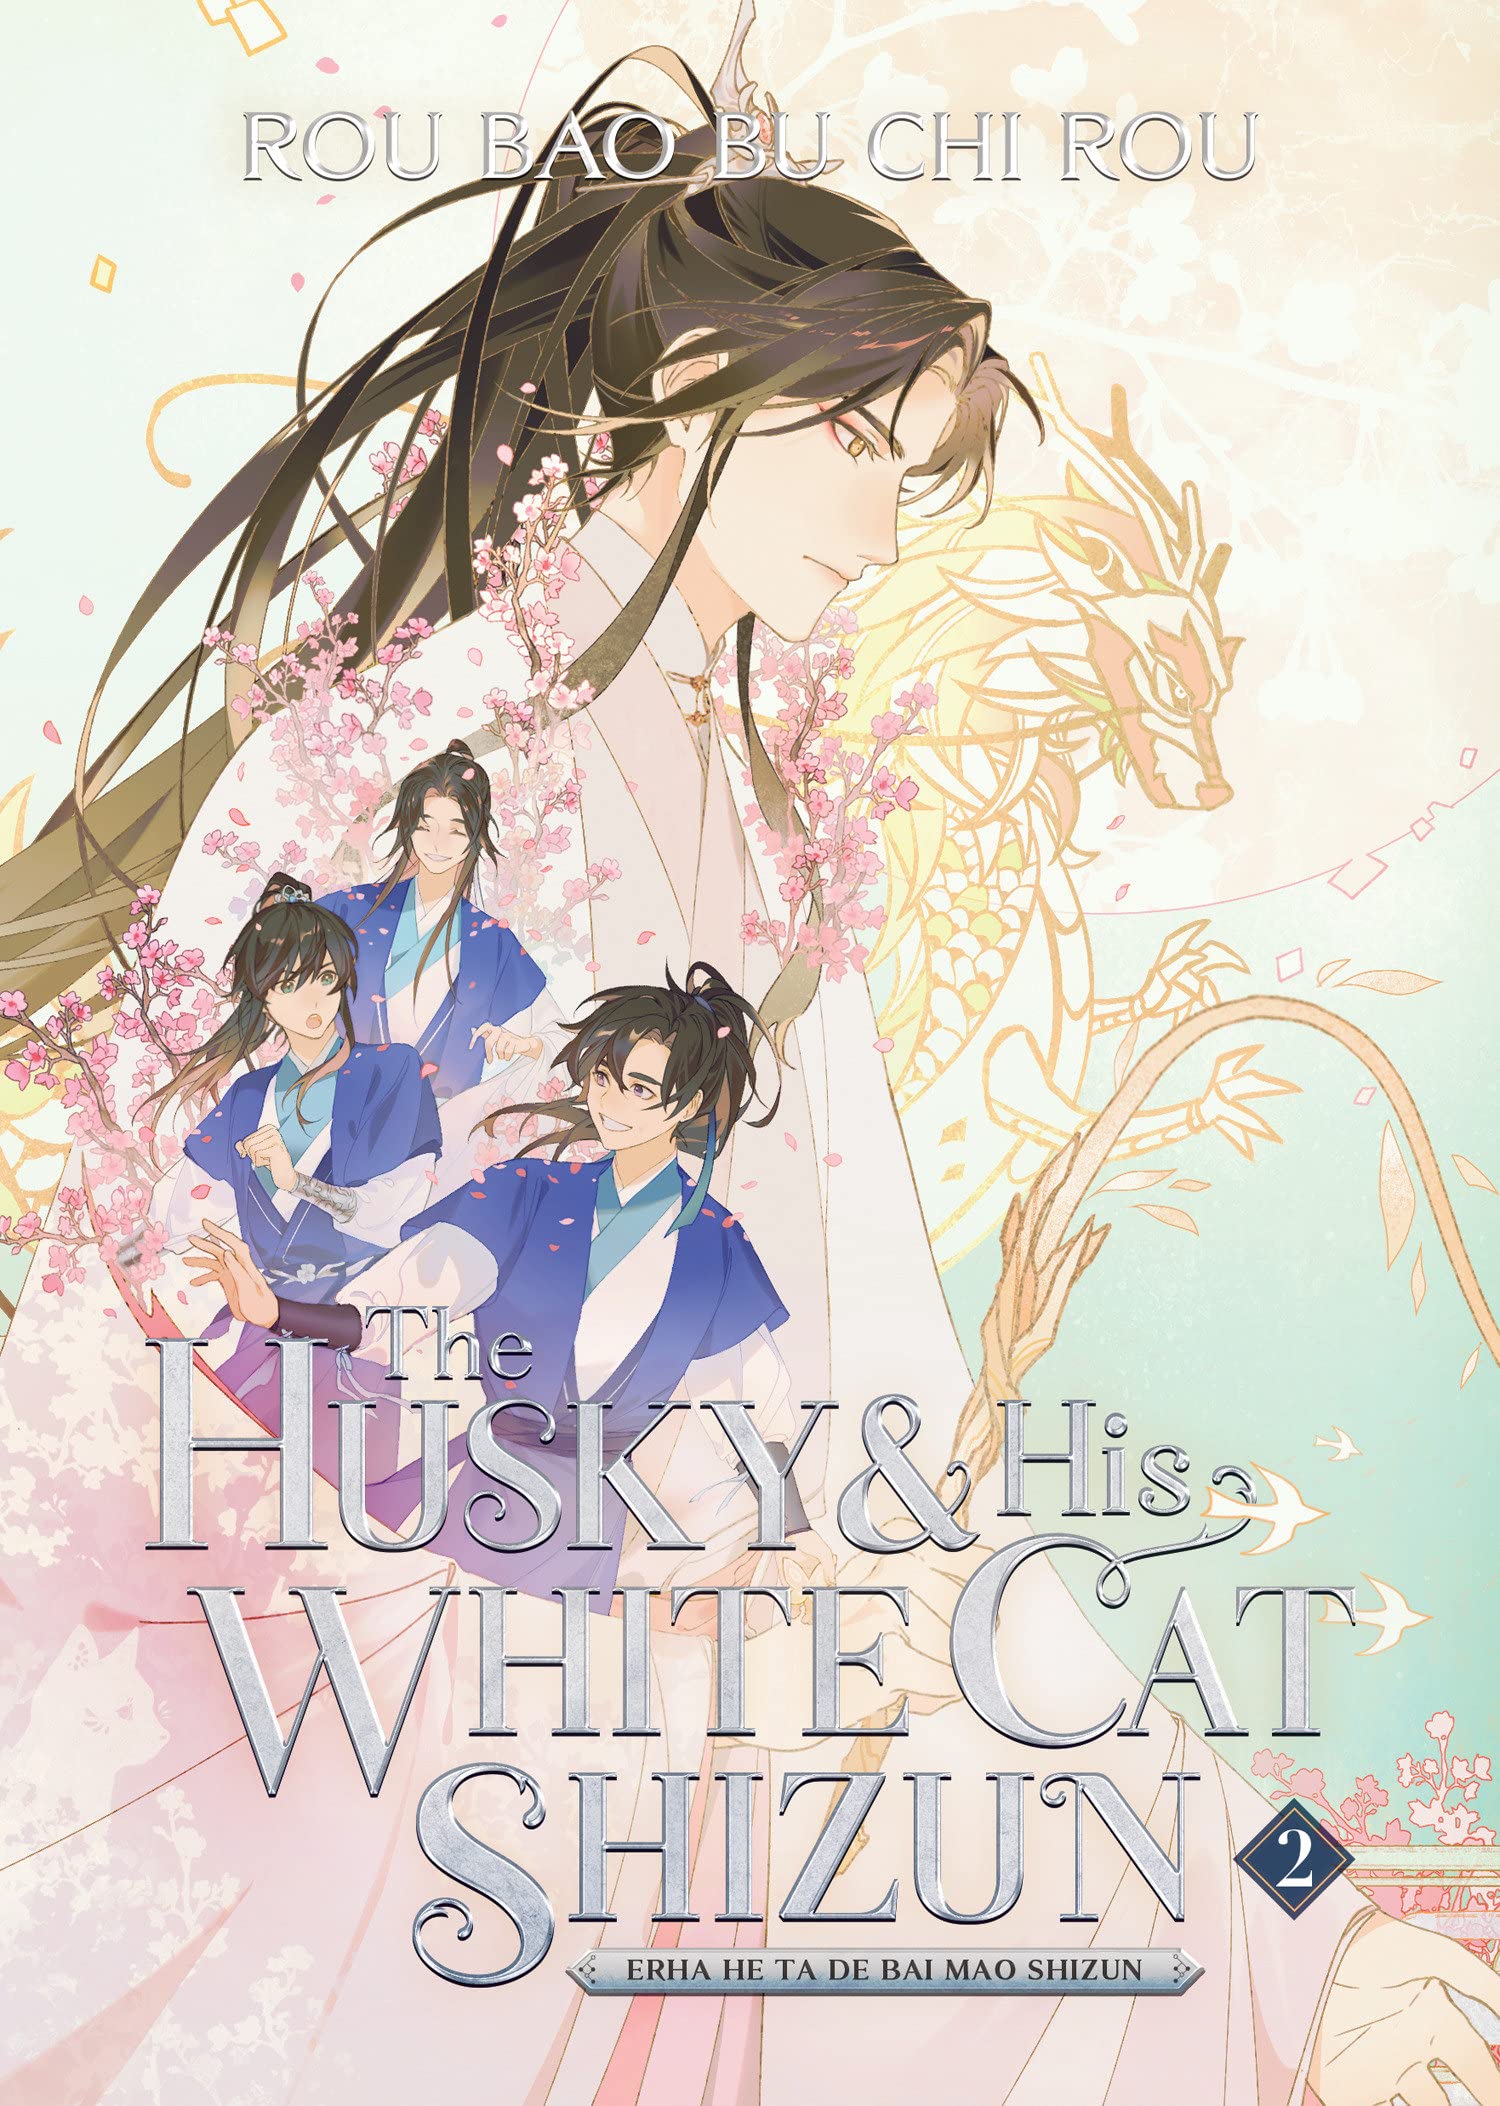 The Husky and His White Cat Shizun: Erha He Ta De Bai Mao Shizun (Novel) - Volume 2 | Rou Bao Bu Chi Rou